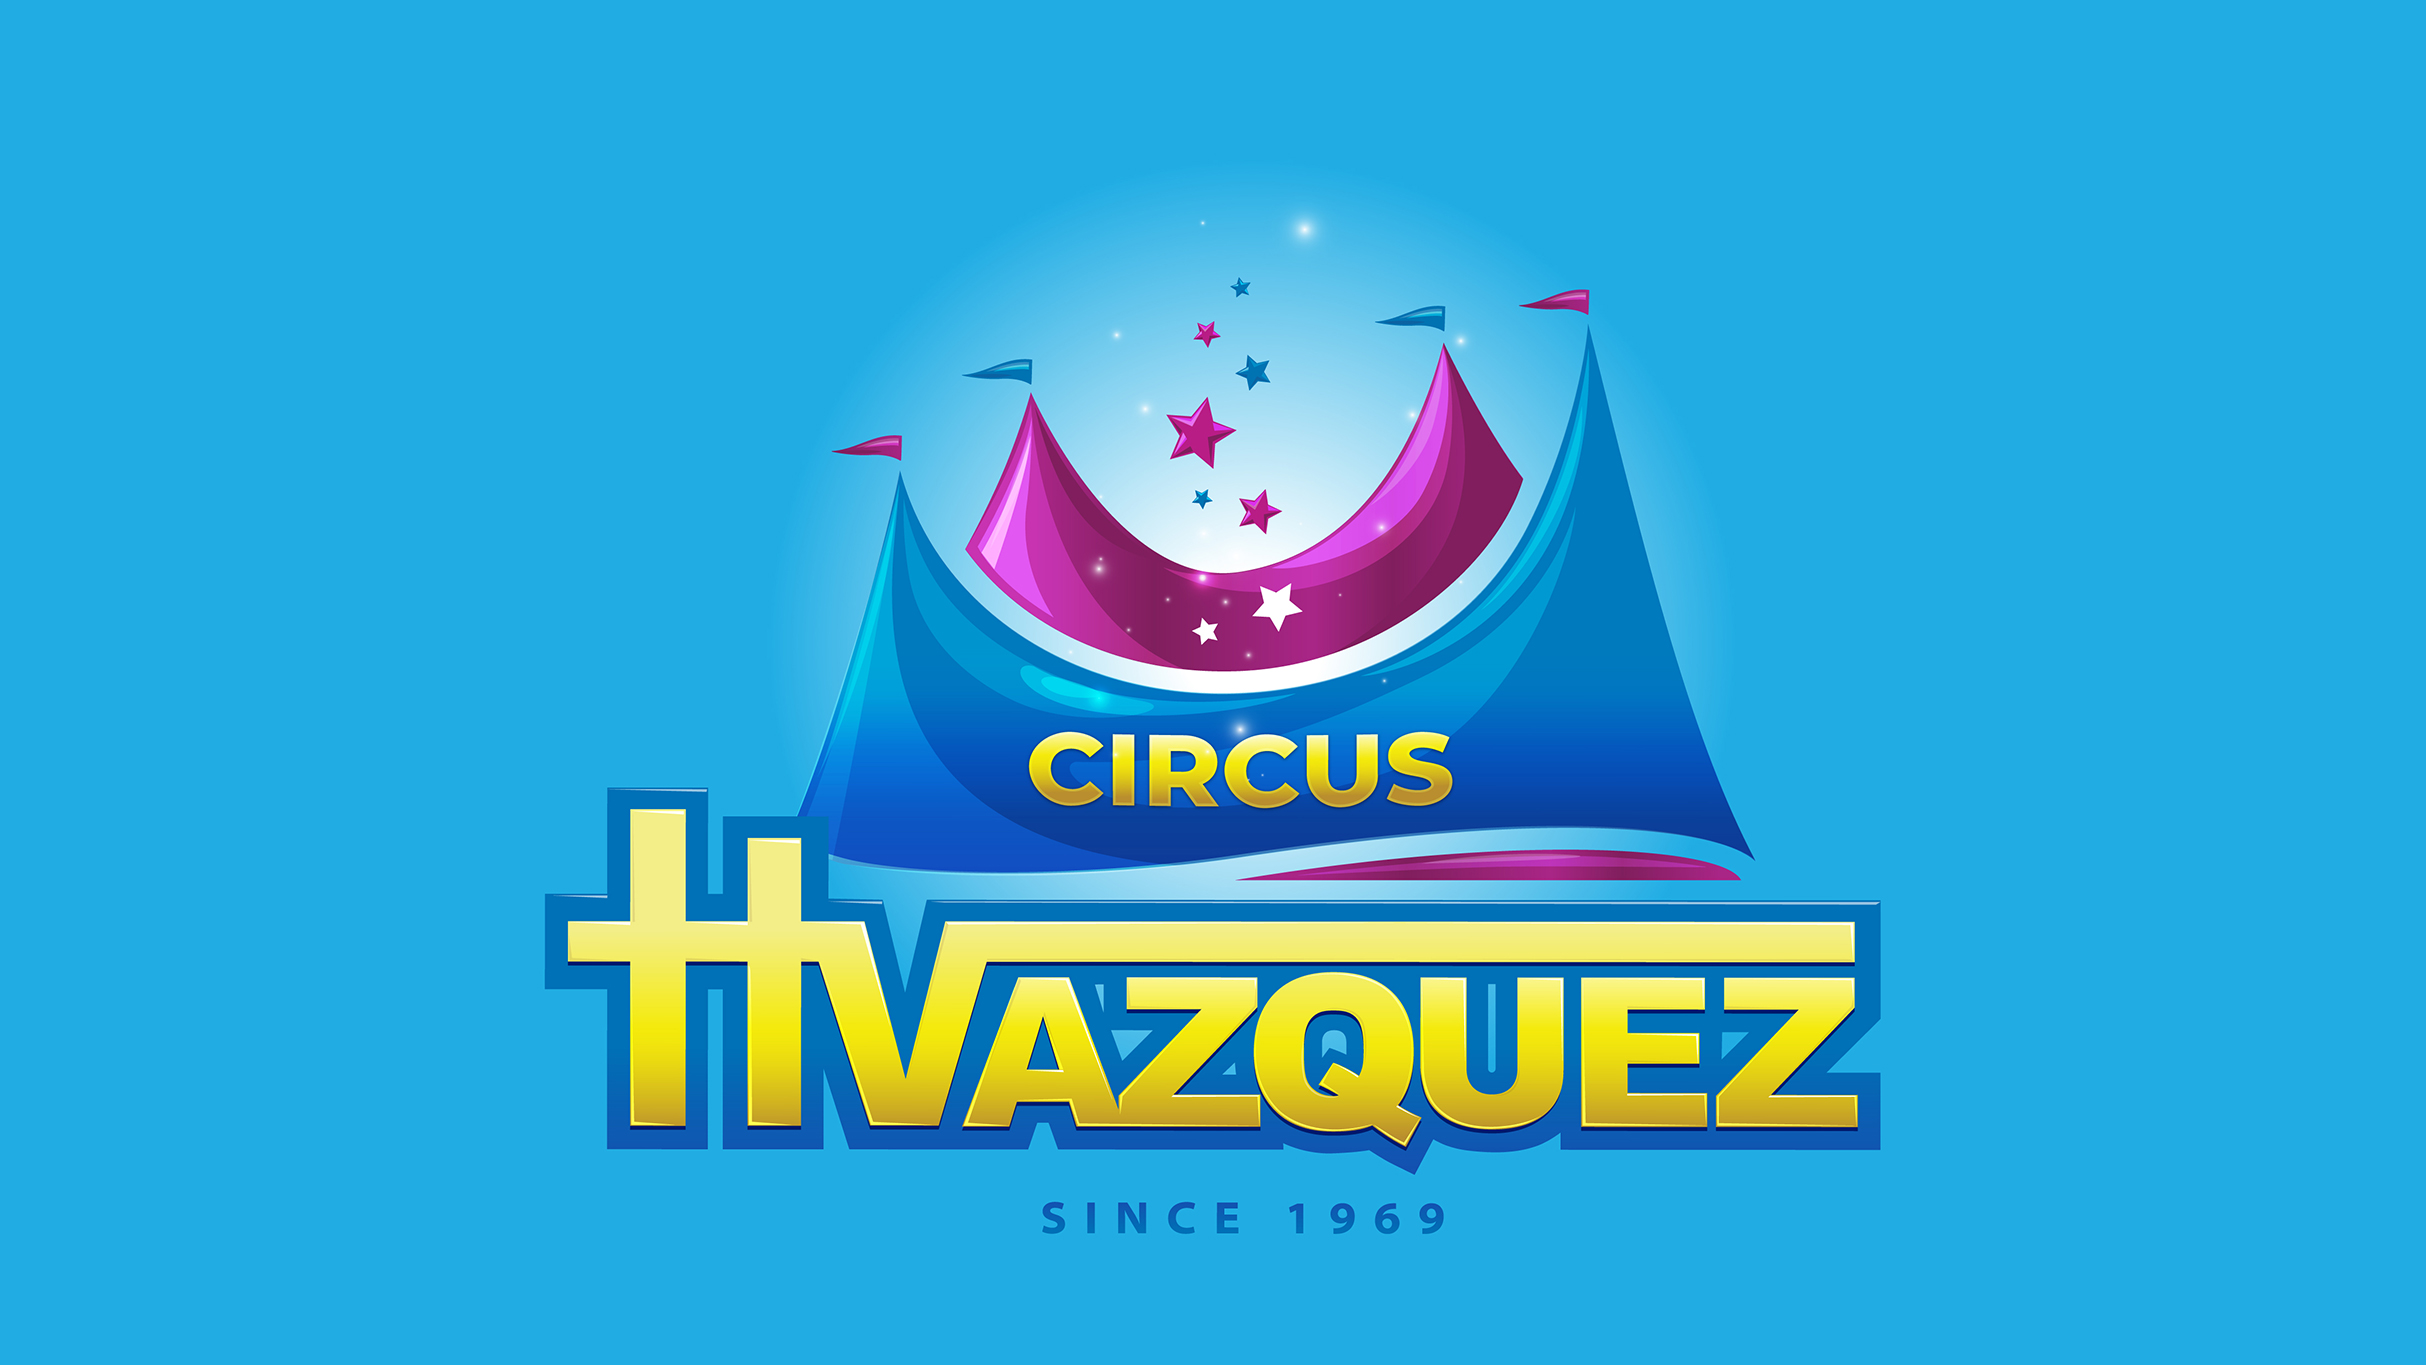 Circus Vazquez - Chicago, IL